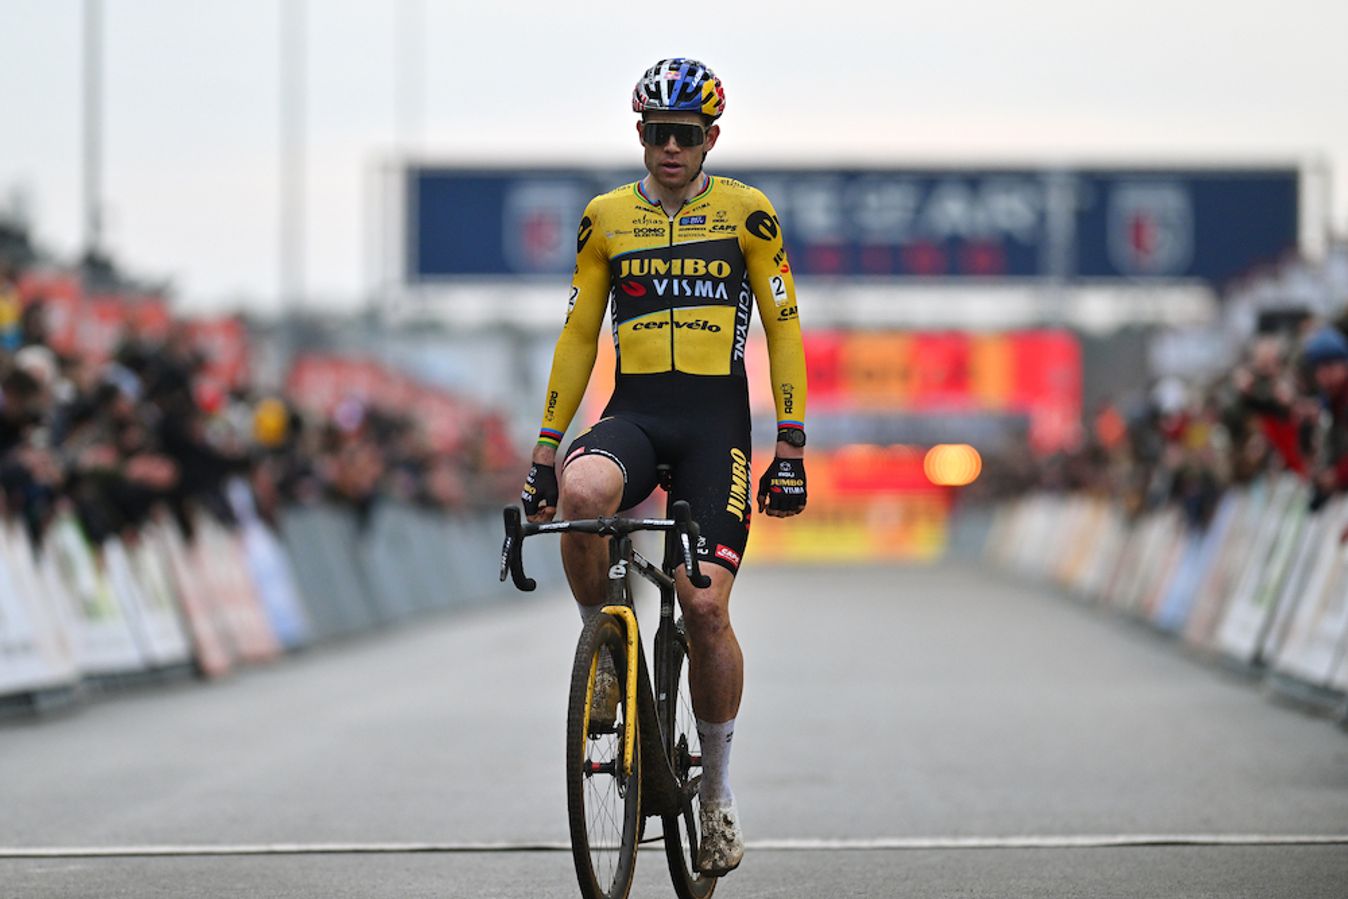 Wout van Aert crosses the line for victory in Heusden-Zolder aboard his gravel bike